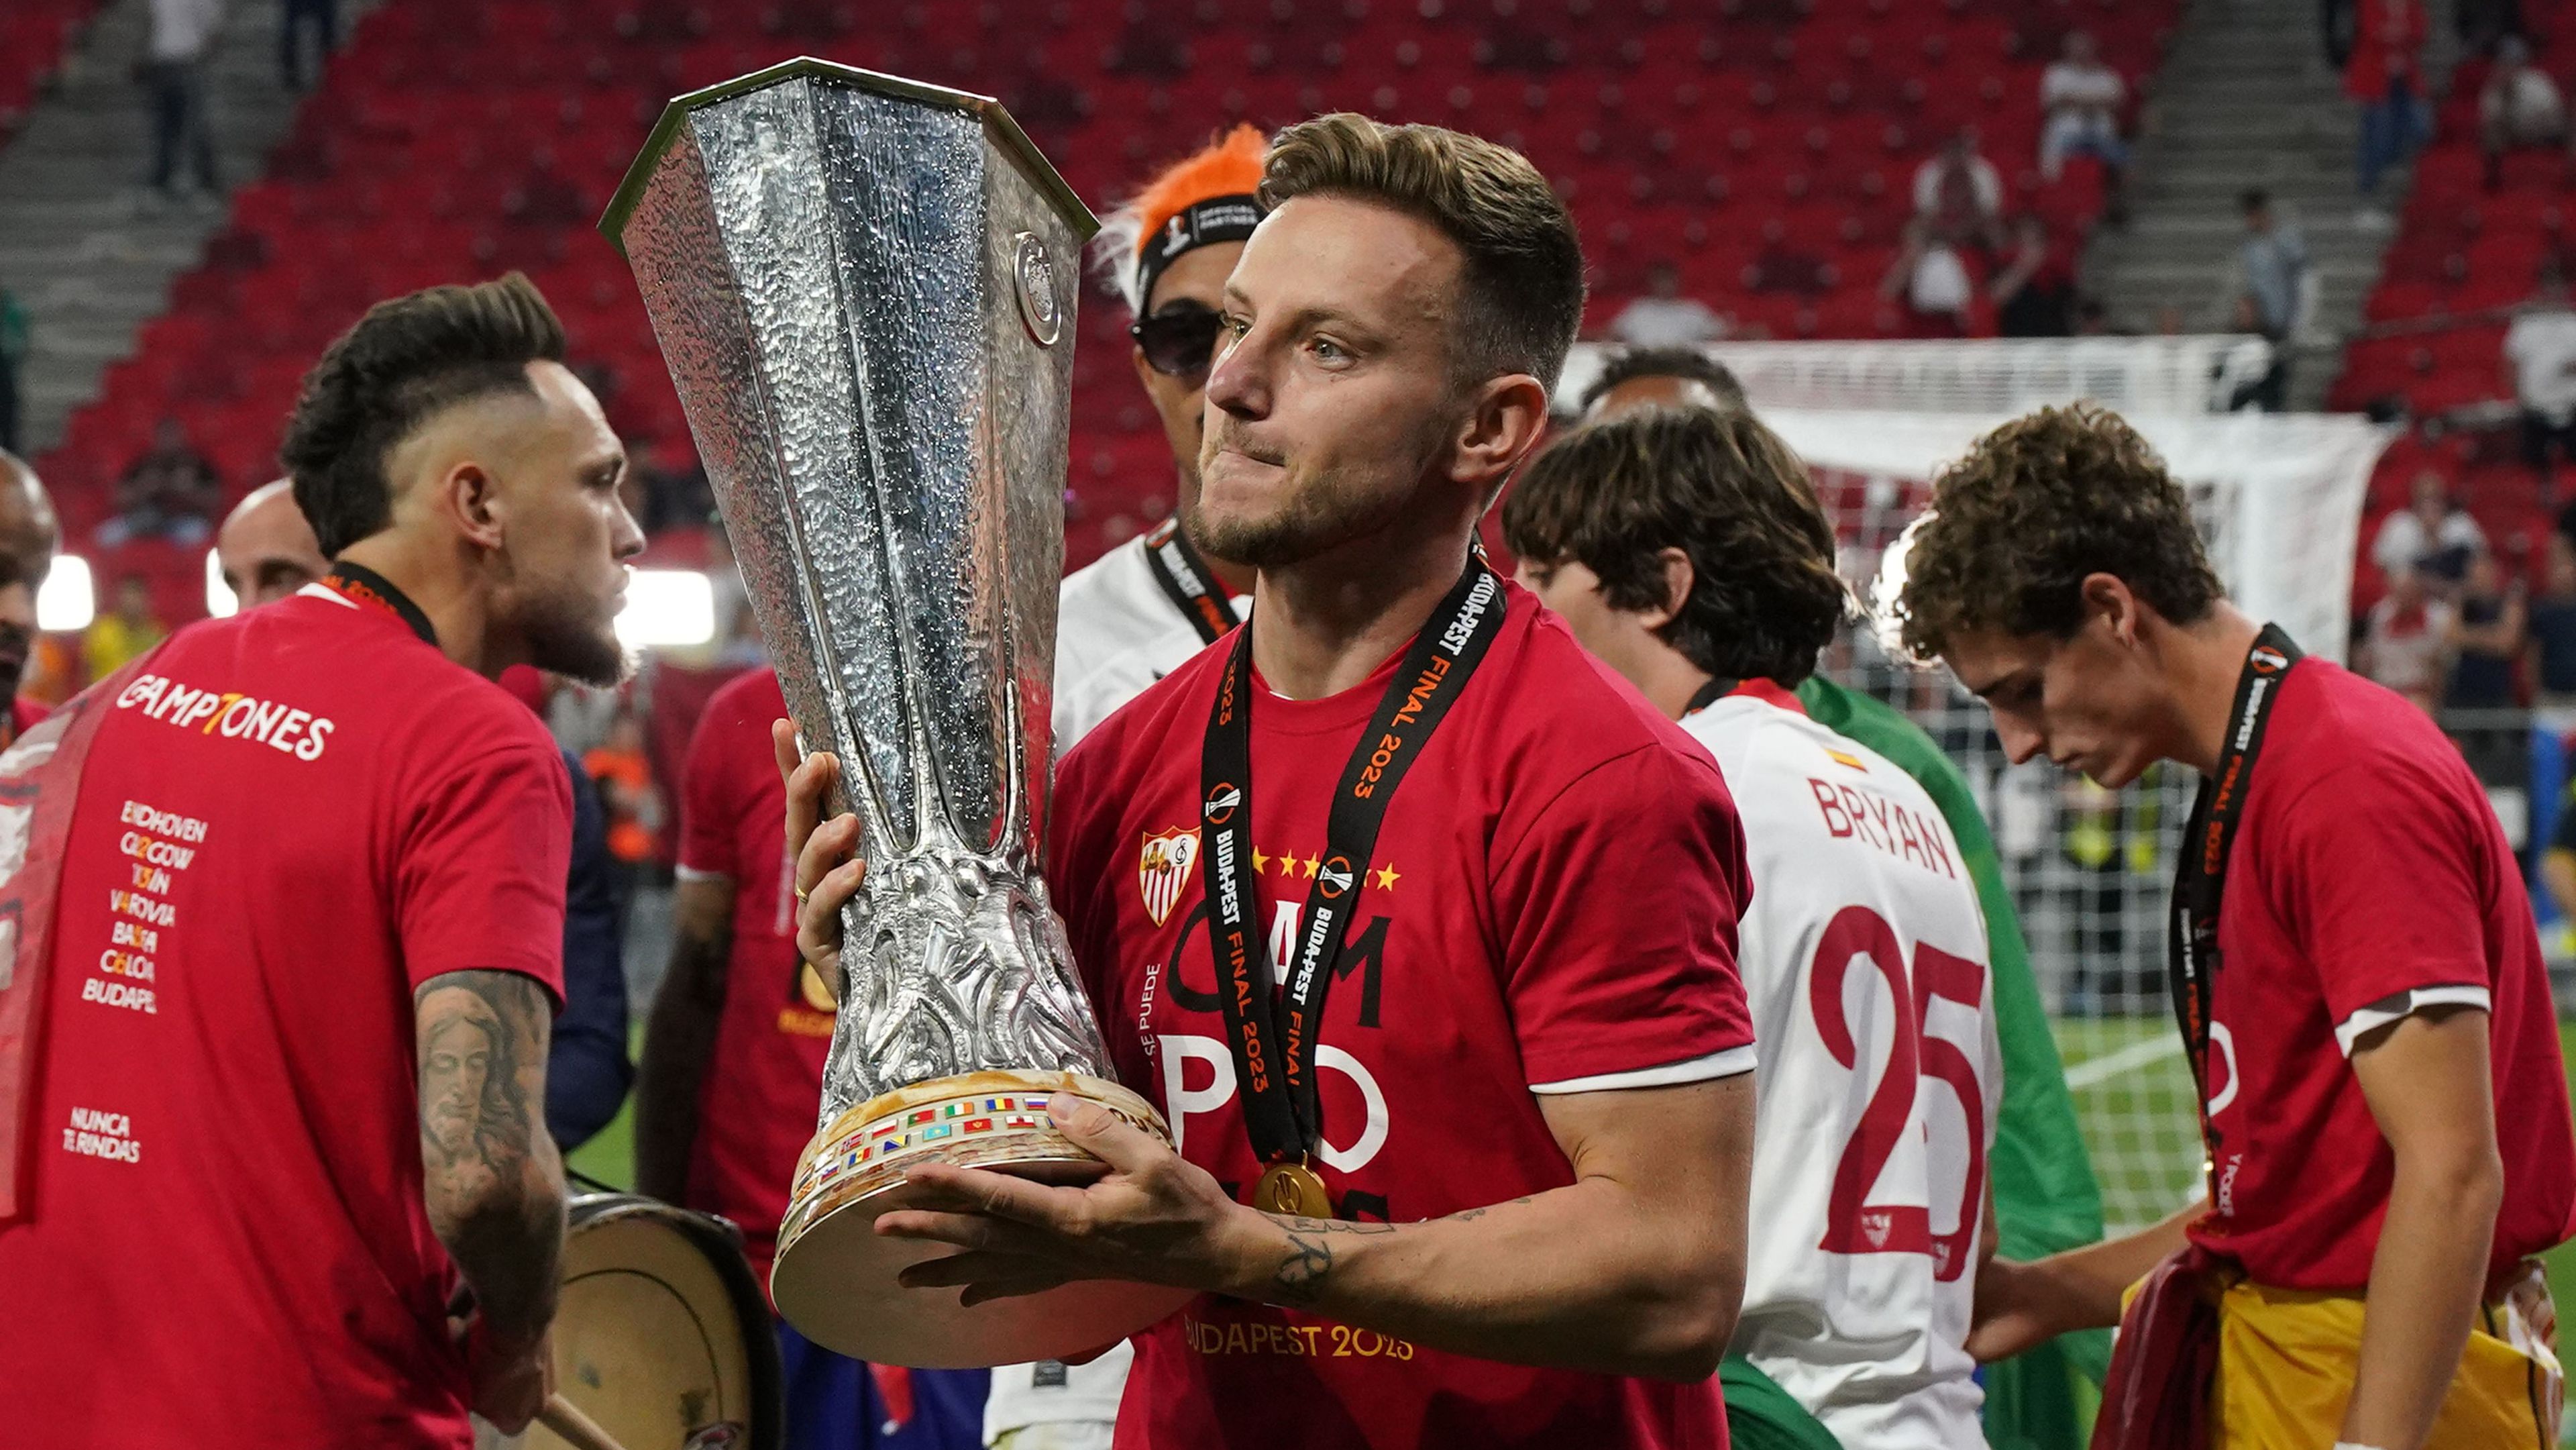 A spanyol Sevilla nyerte a budapesti Európa-liga döntőt (Fotó: Getty Images)